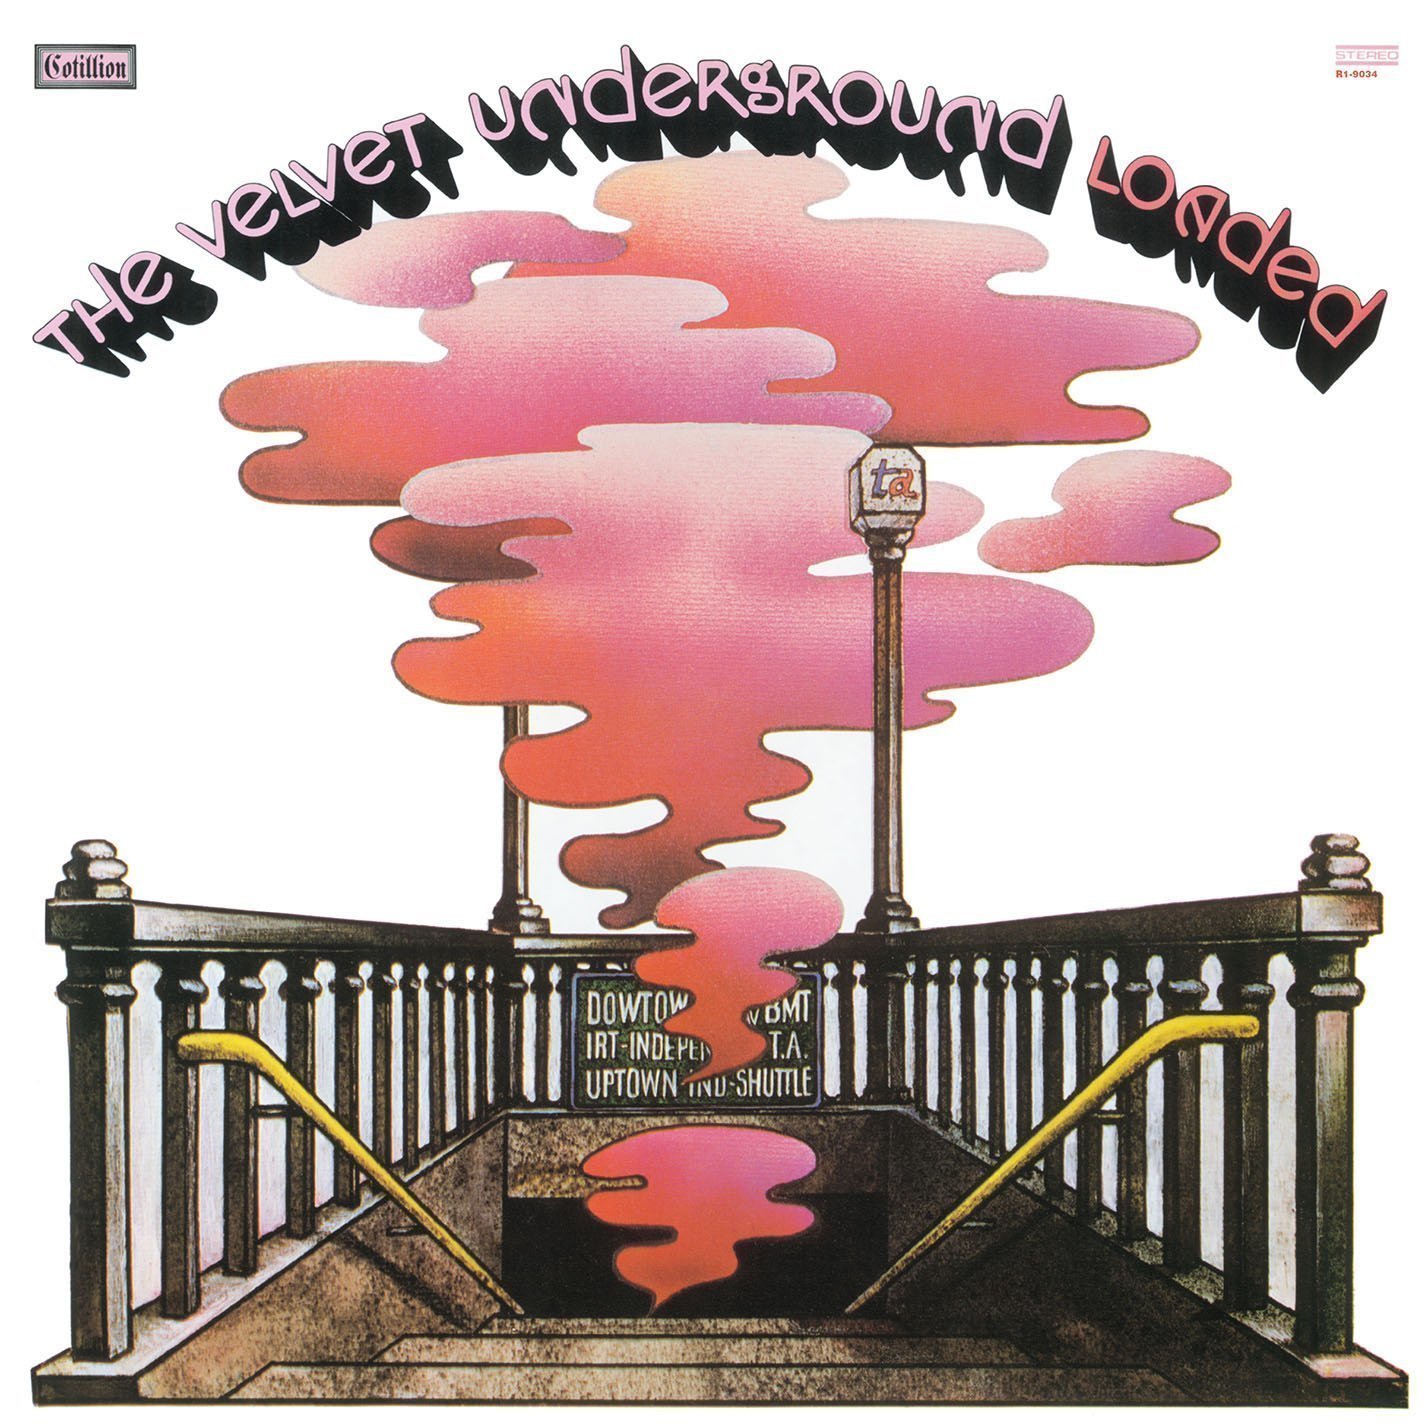 Disc de vinil The Velvet Underground - Loaded (LP)